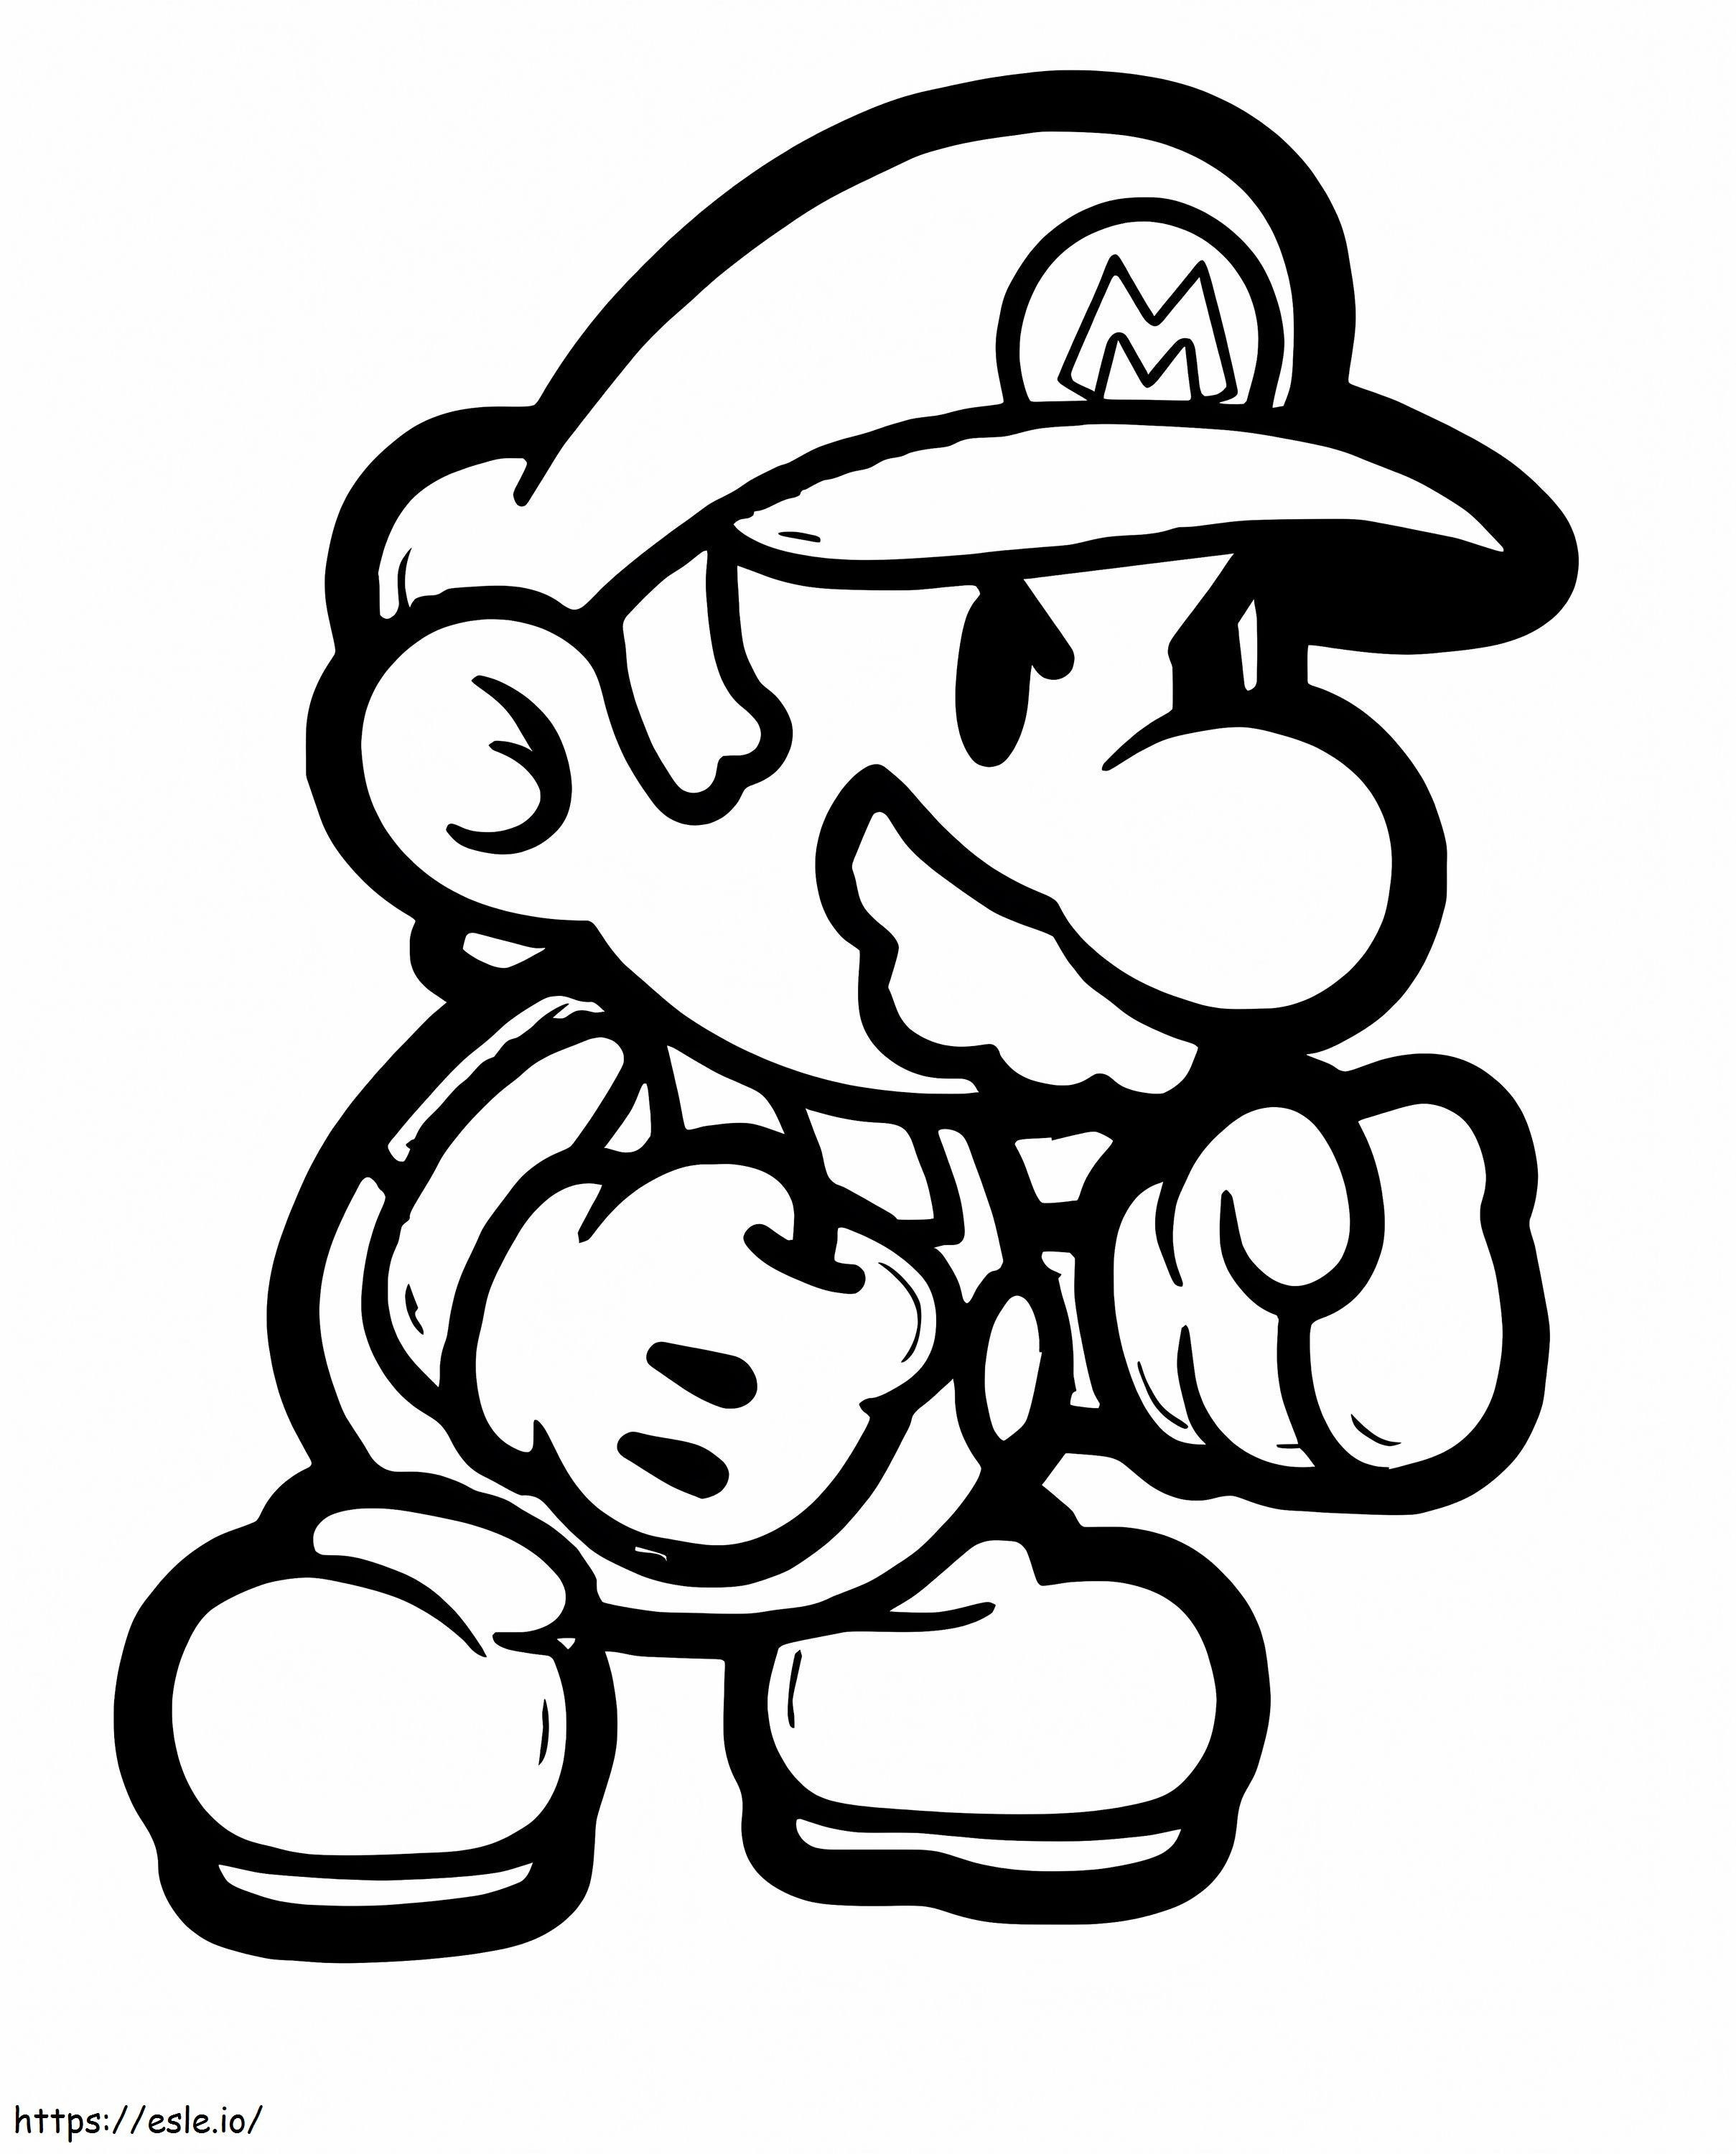 Mario Kickboxing de colorat